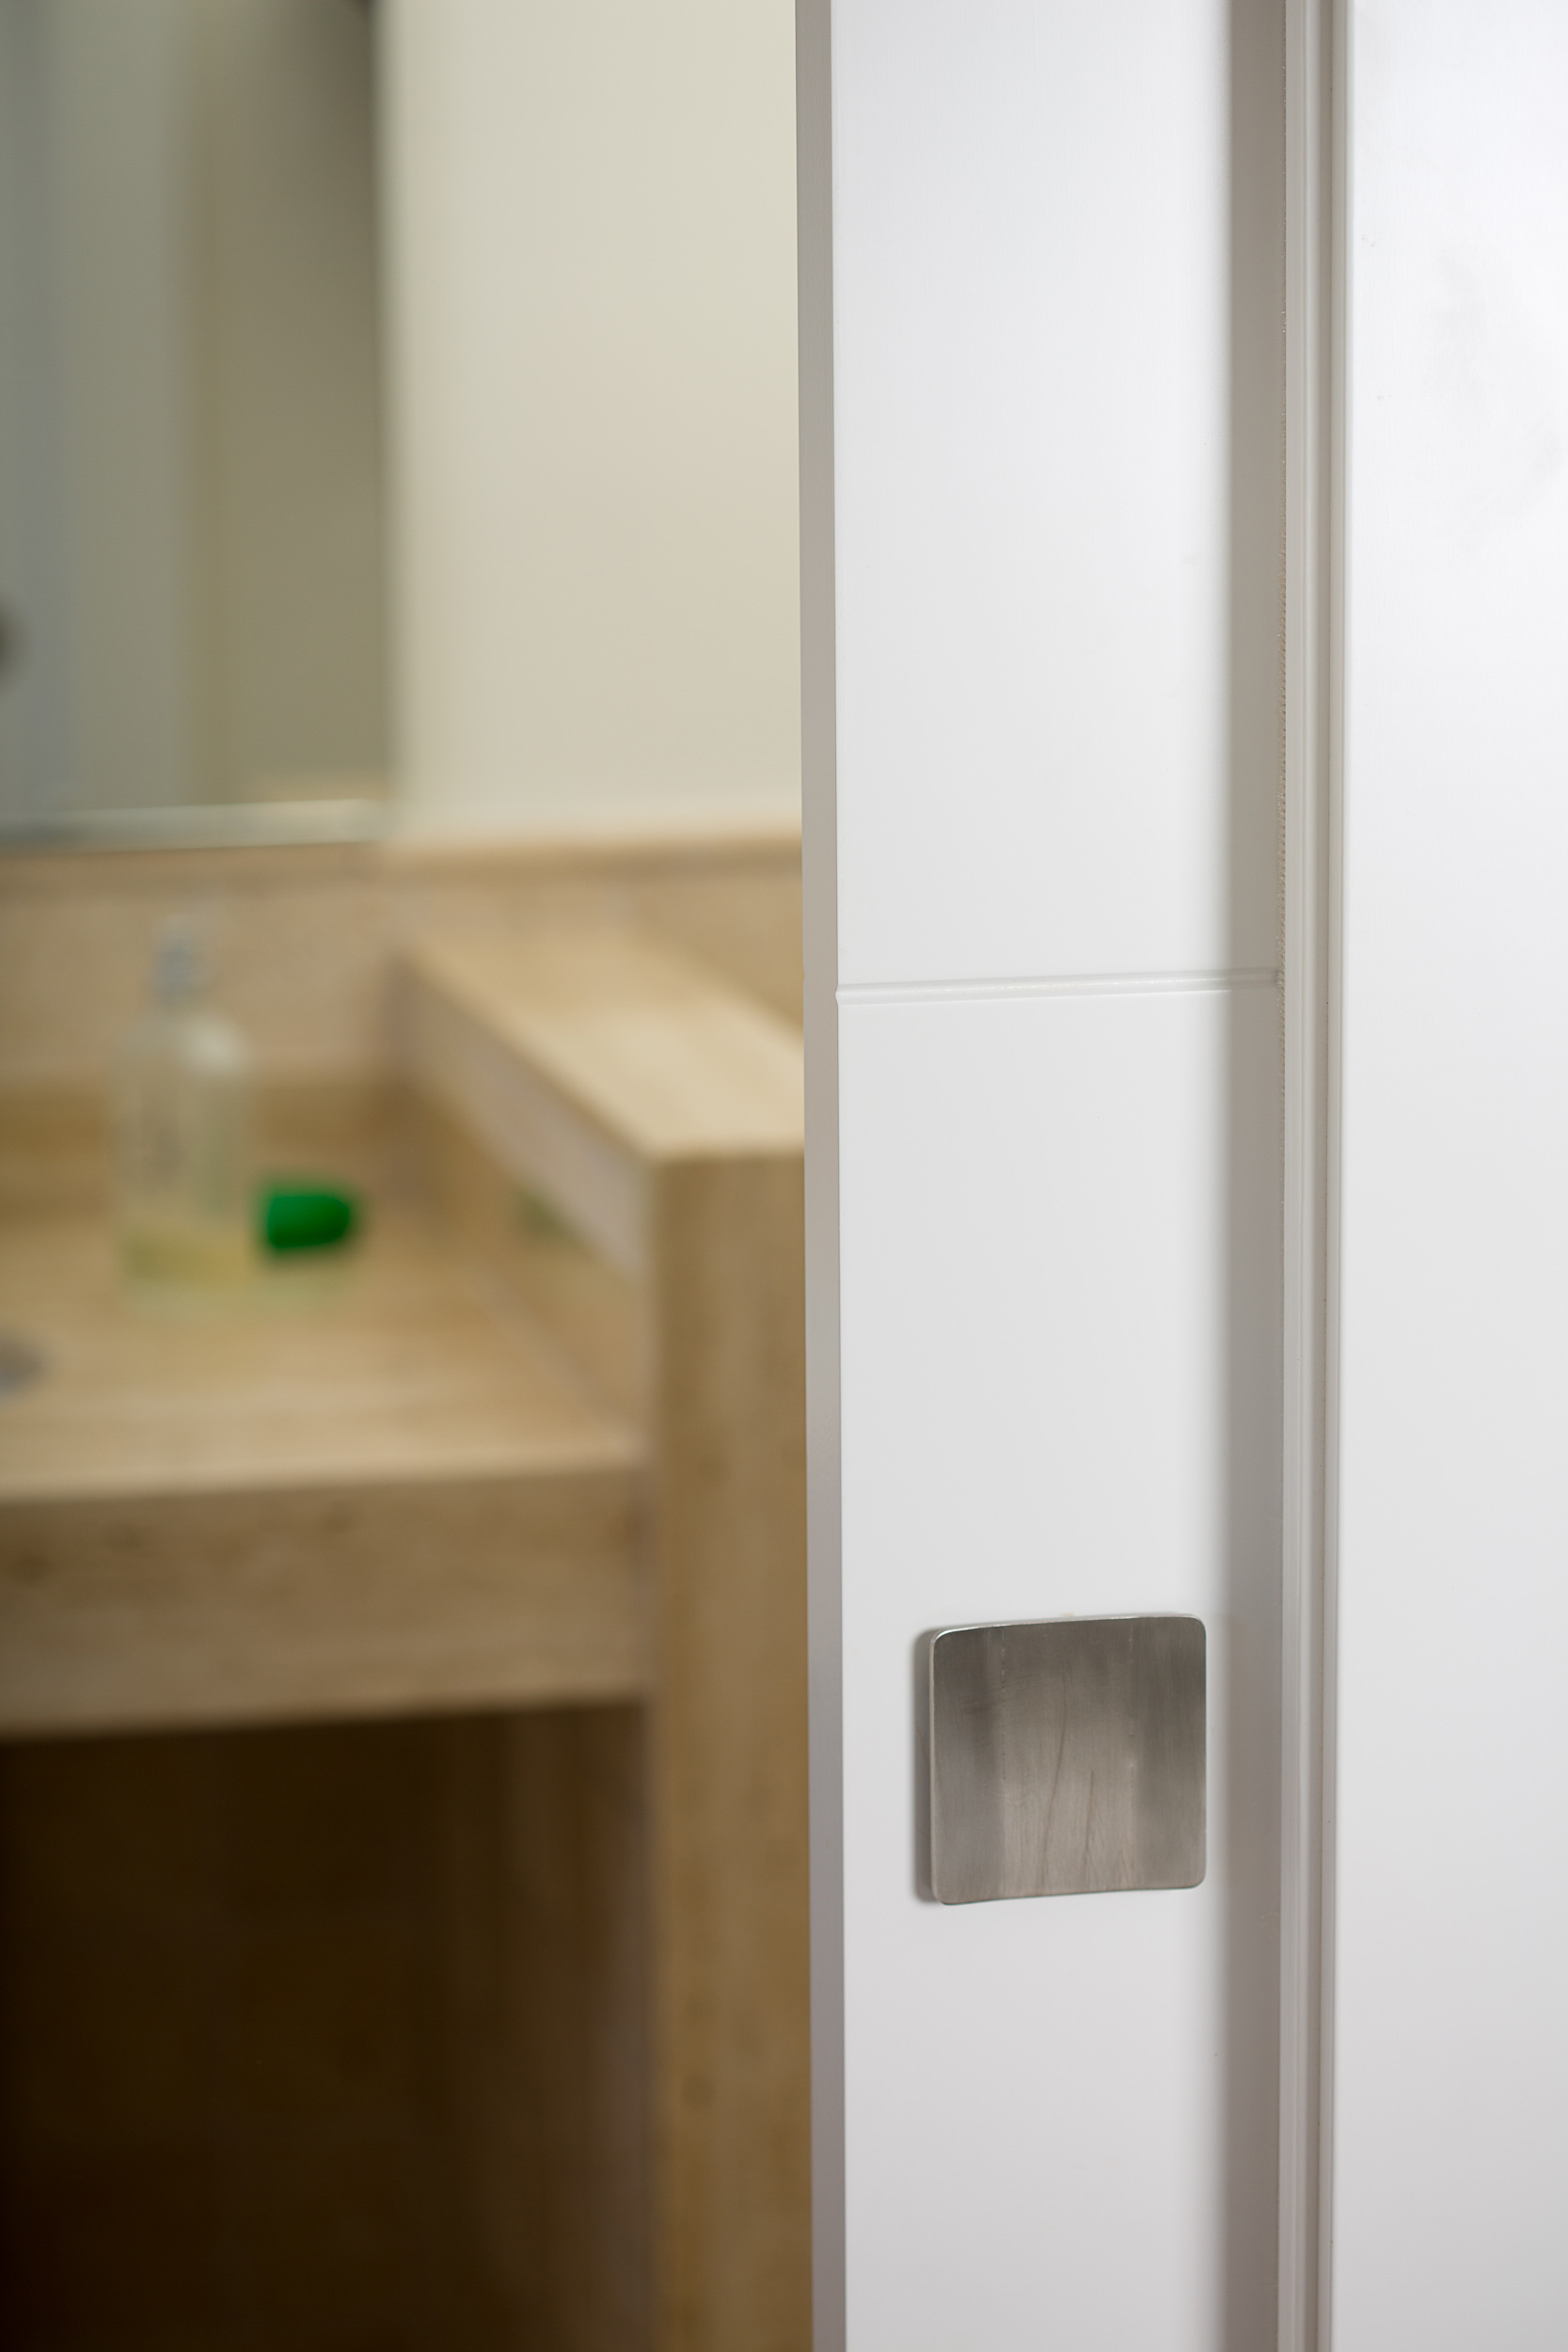 Tiradores para armarios de dormitorios / Handles for bedroom cupboards -  Viefe handles